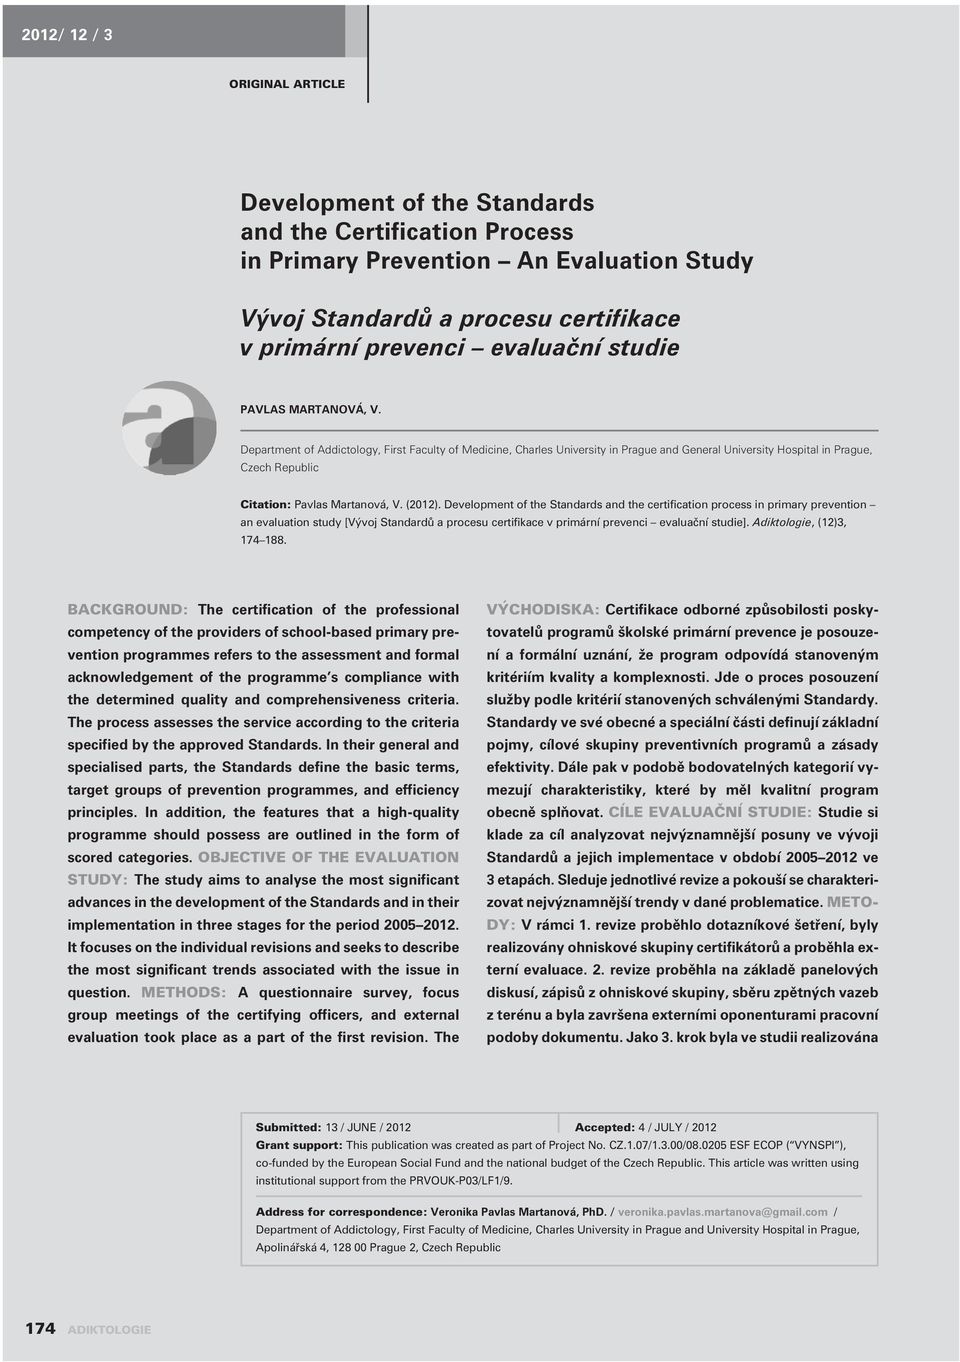 Development of the Standards and the certification process in primary prevention an evaluation study [Vývoj Standardù a procesu certifikace v primární prevenci evaluaèní studie].